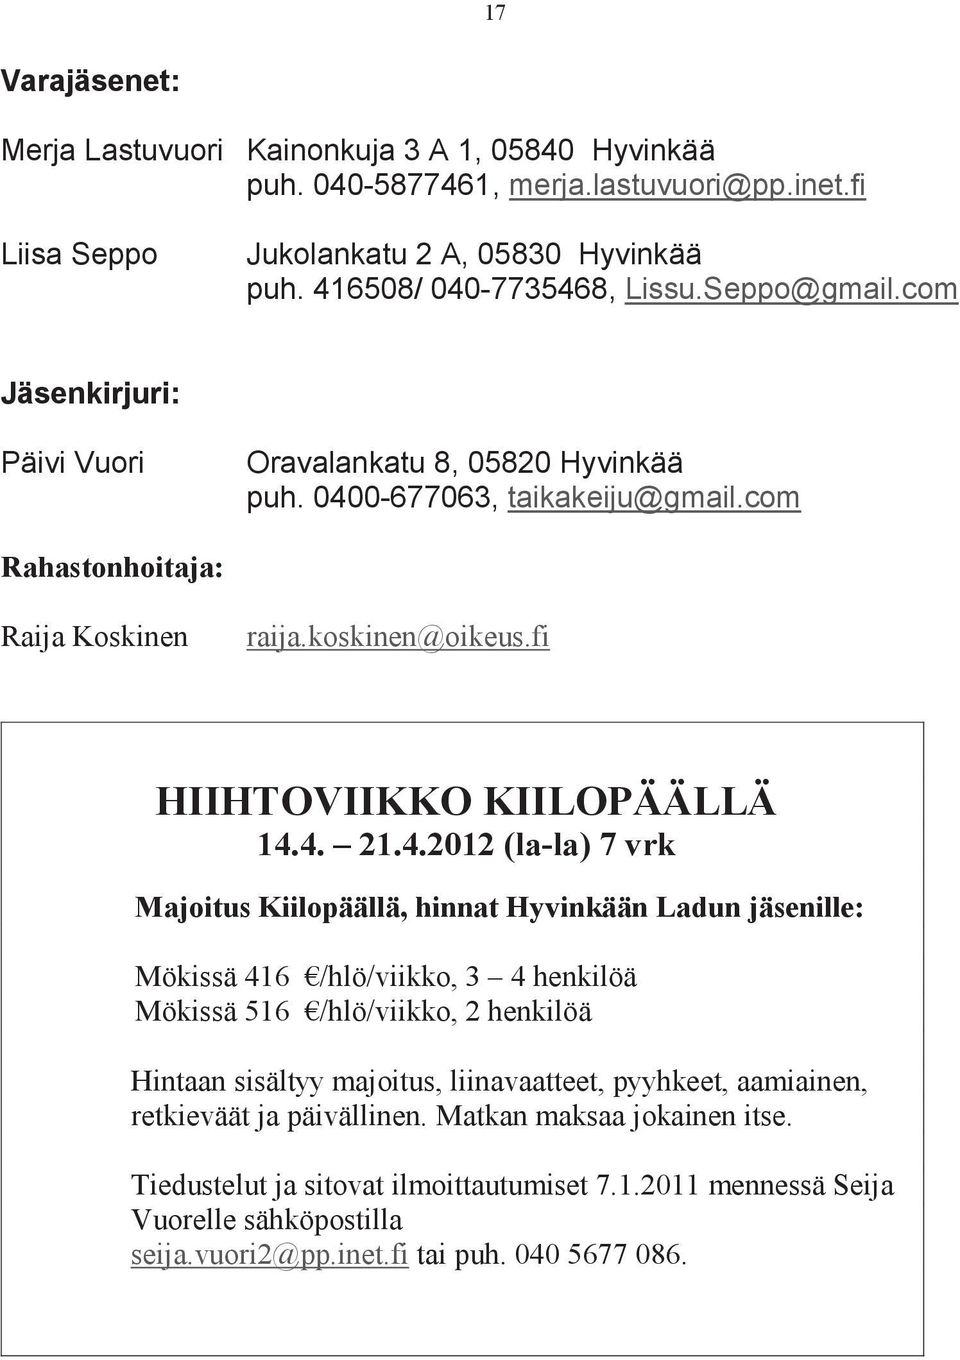 4.2012 (la-la) 7 vrk Majoitus Kiilopäällä, hinnat Hyvinkään Ladun jäsenille: Mökissä 416 /hlö/viikko, 3 4 henkilöä Mökissä 516 /hlö/viikko, 2 henkilöä Hintaan sisältyy majoitus, liinavaatteet,